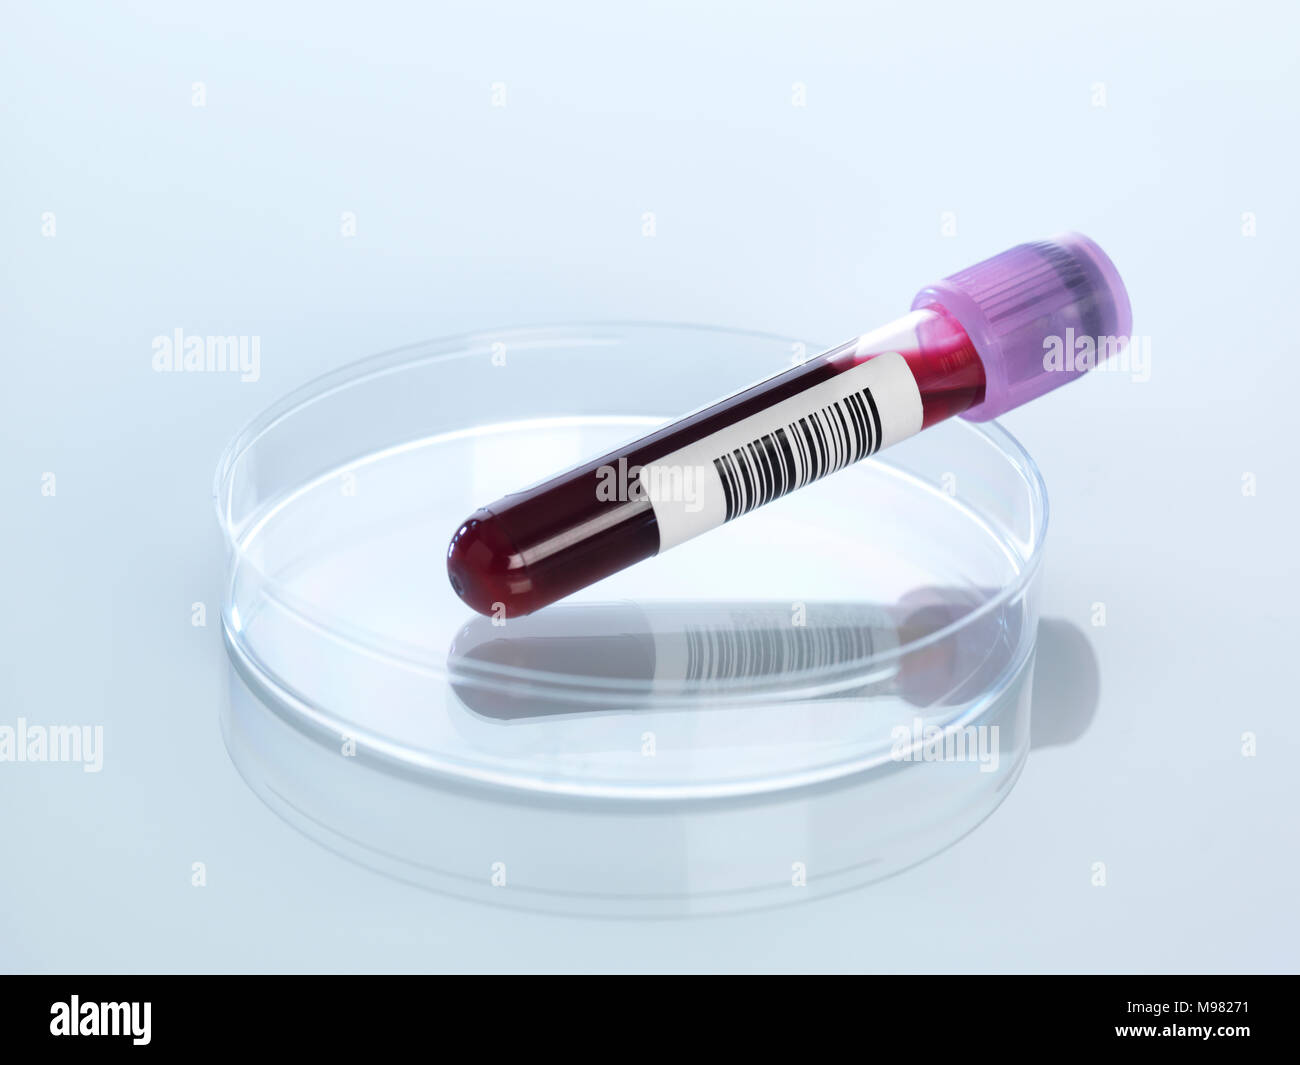 Blood sample in petri dish Stock Photo